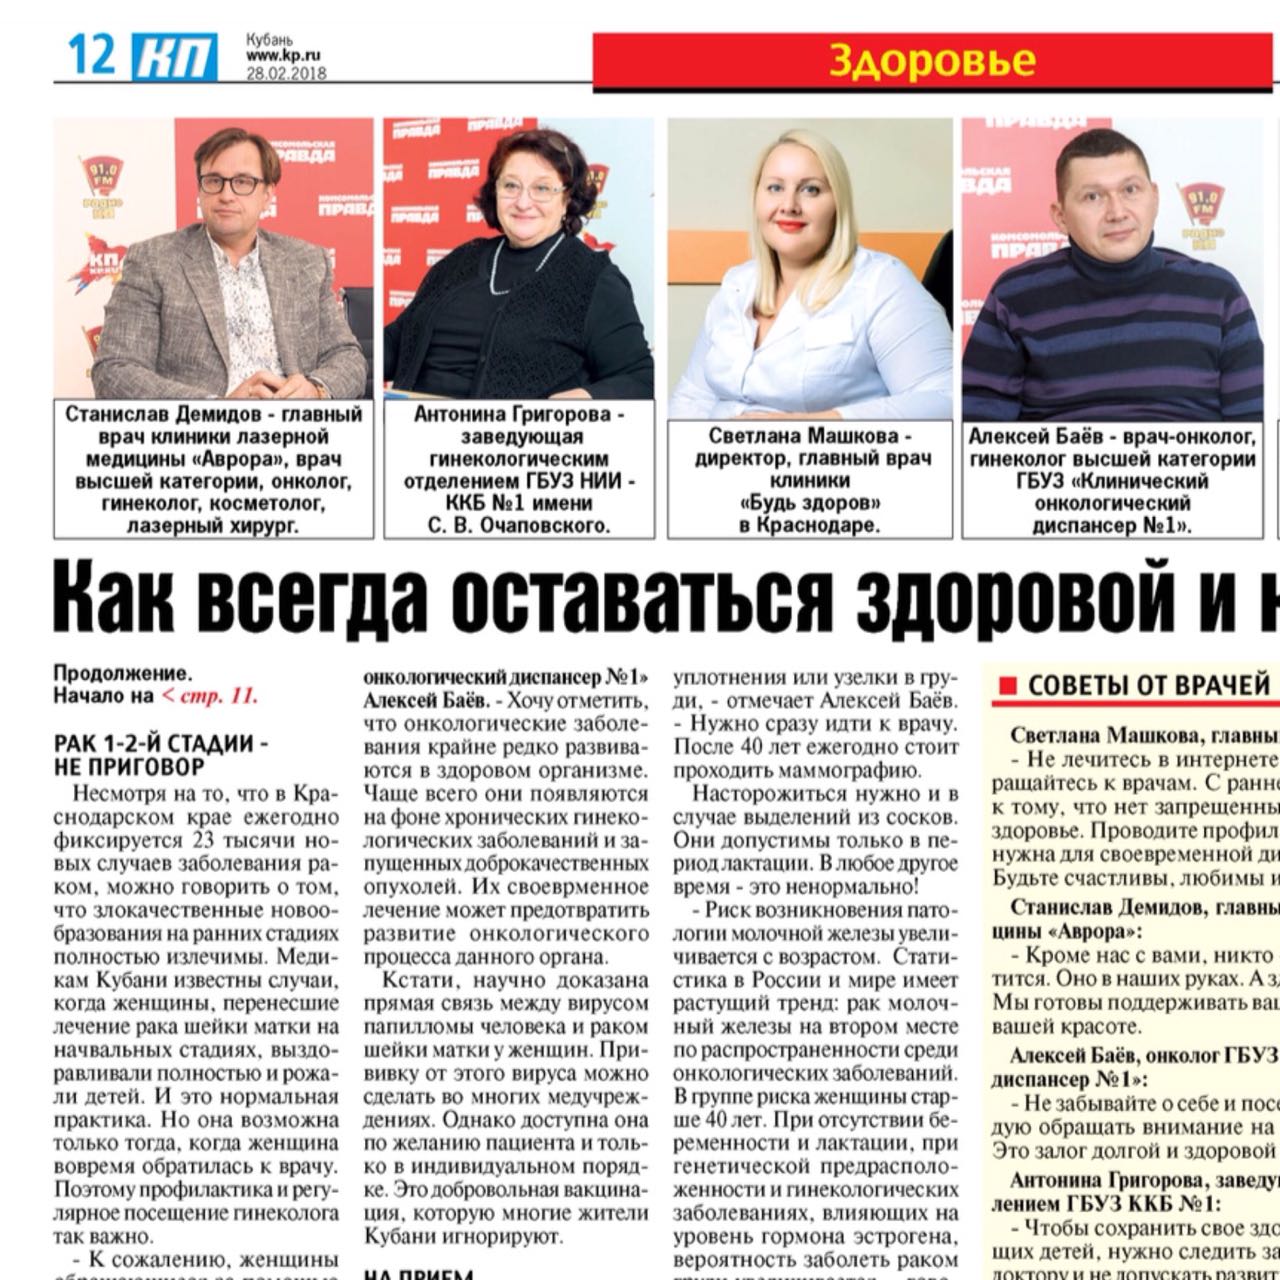 21 февраля прошёл круглый стол на тему «Женское здоровье» в редакции газеты «Комсомольская правда»